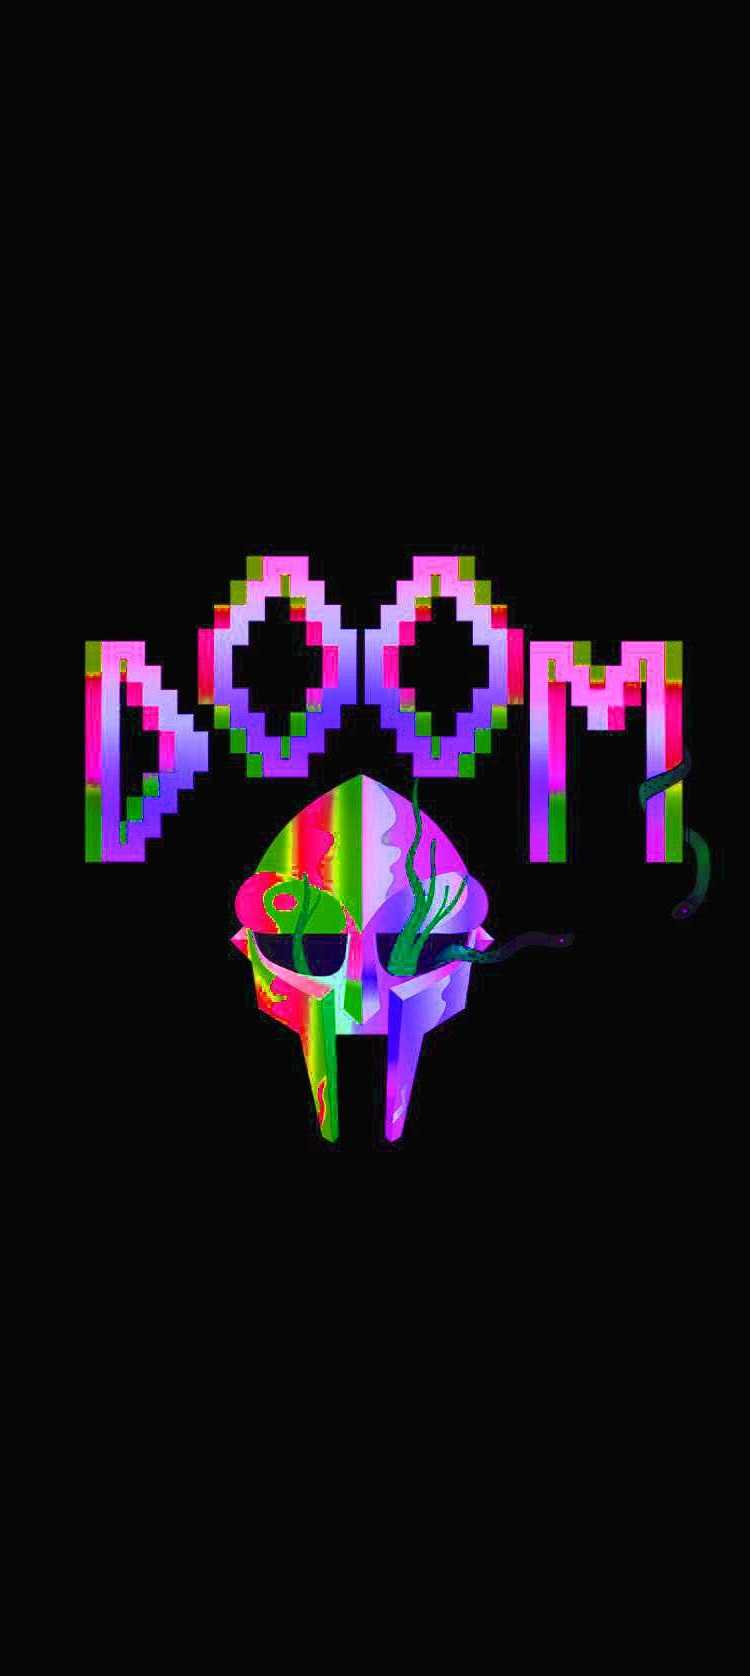 Mobile MF Doom Wallpaper 1